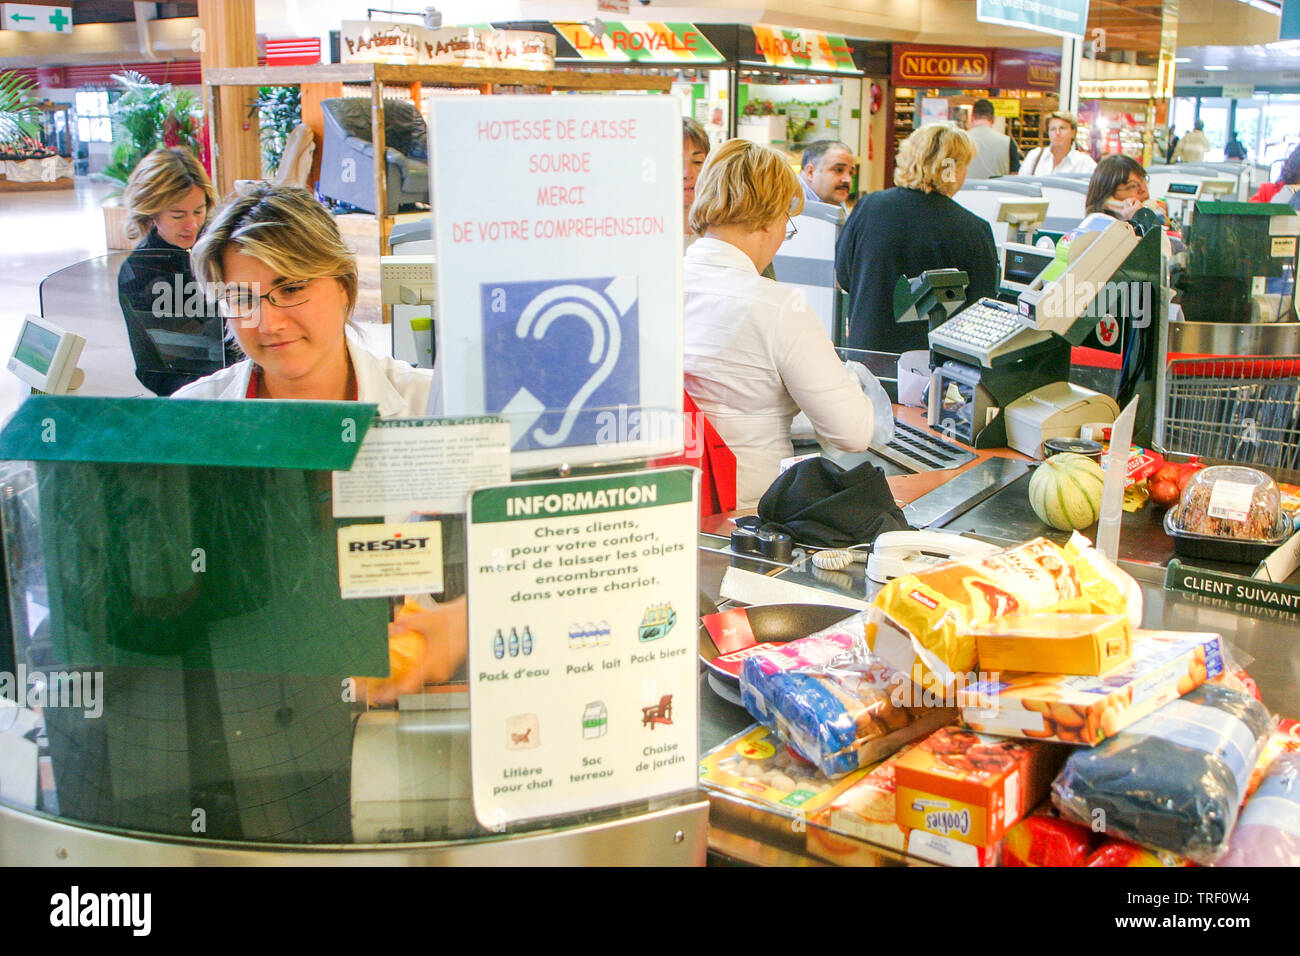 Hipermercados Auchan, empleado discapacitado, Ecully, Francia Foto de stock